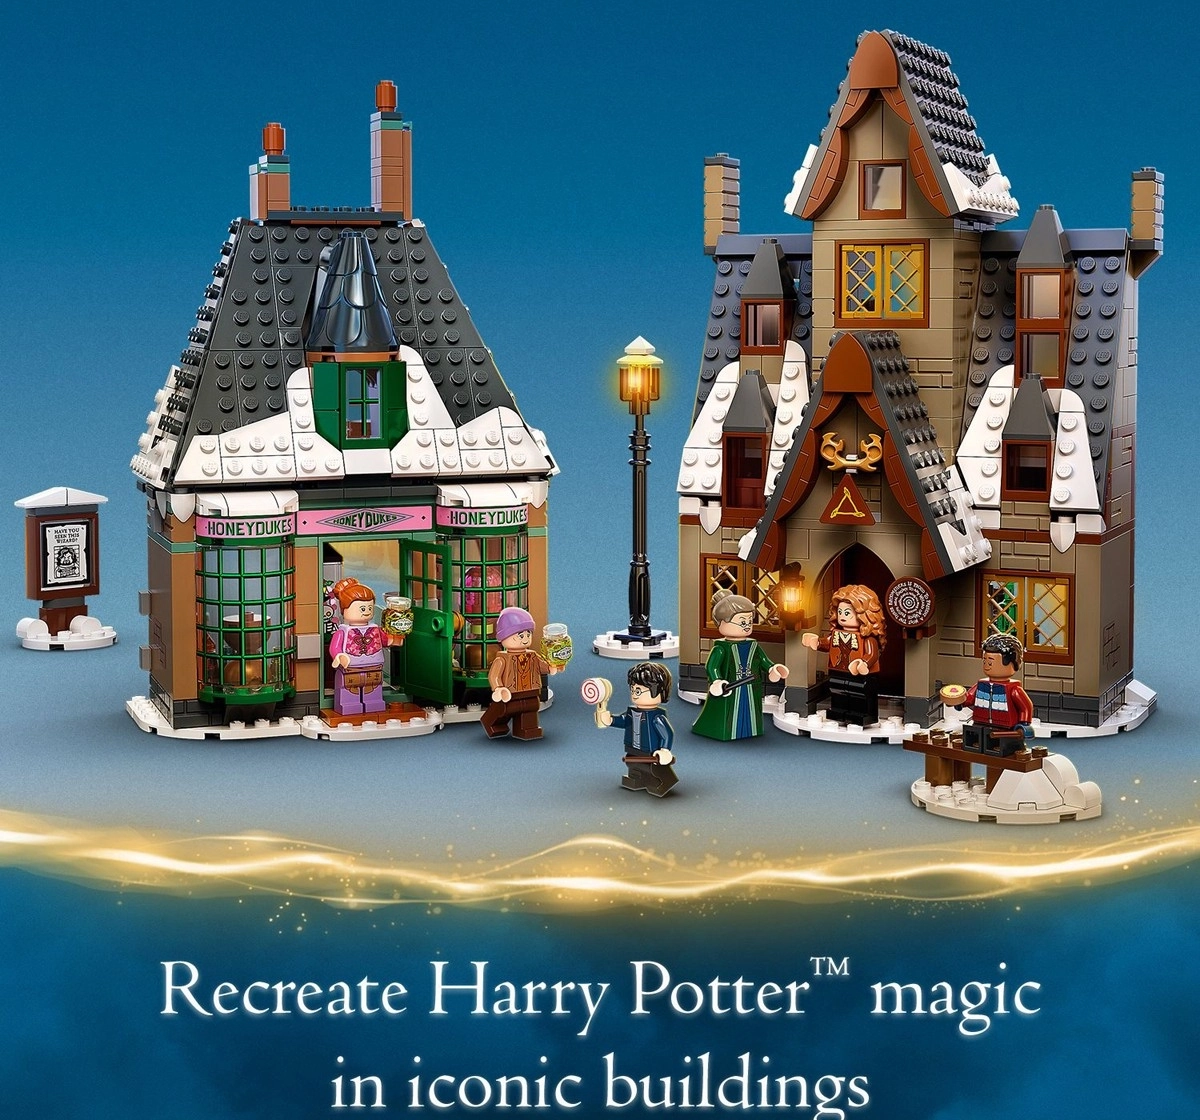 Lego 76388 Harry Potter Hogsmeade Village Visit